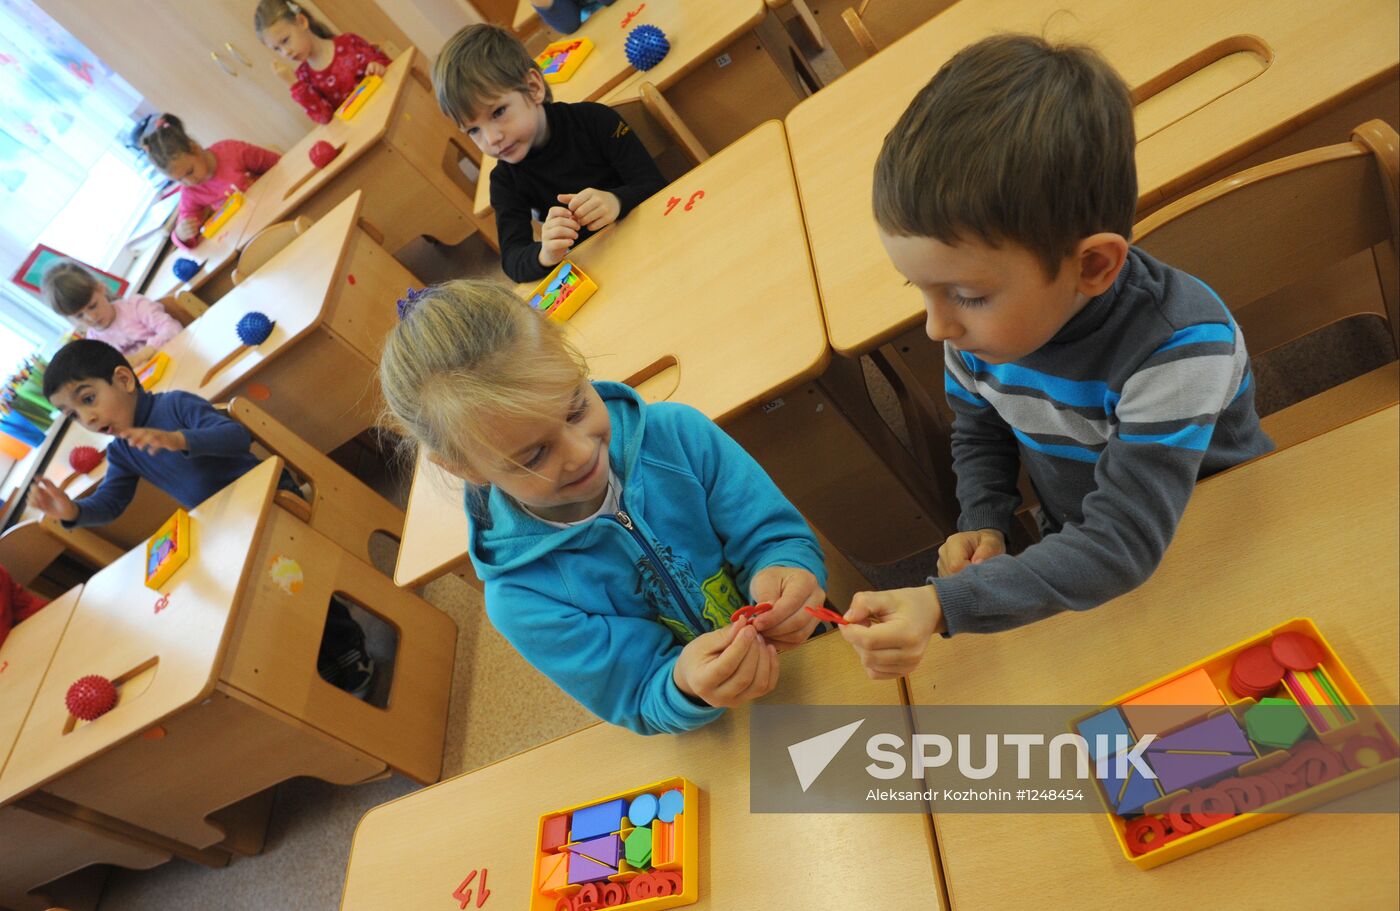 Vishenka kindergarten in Moscow